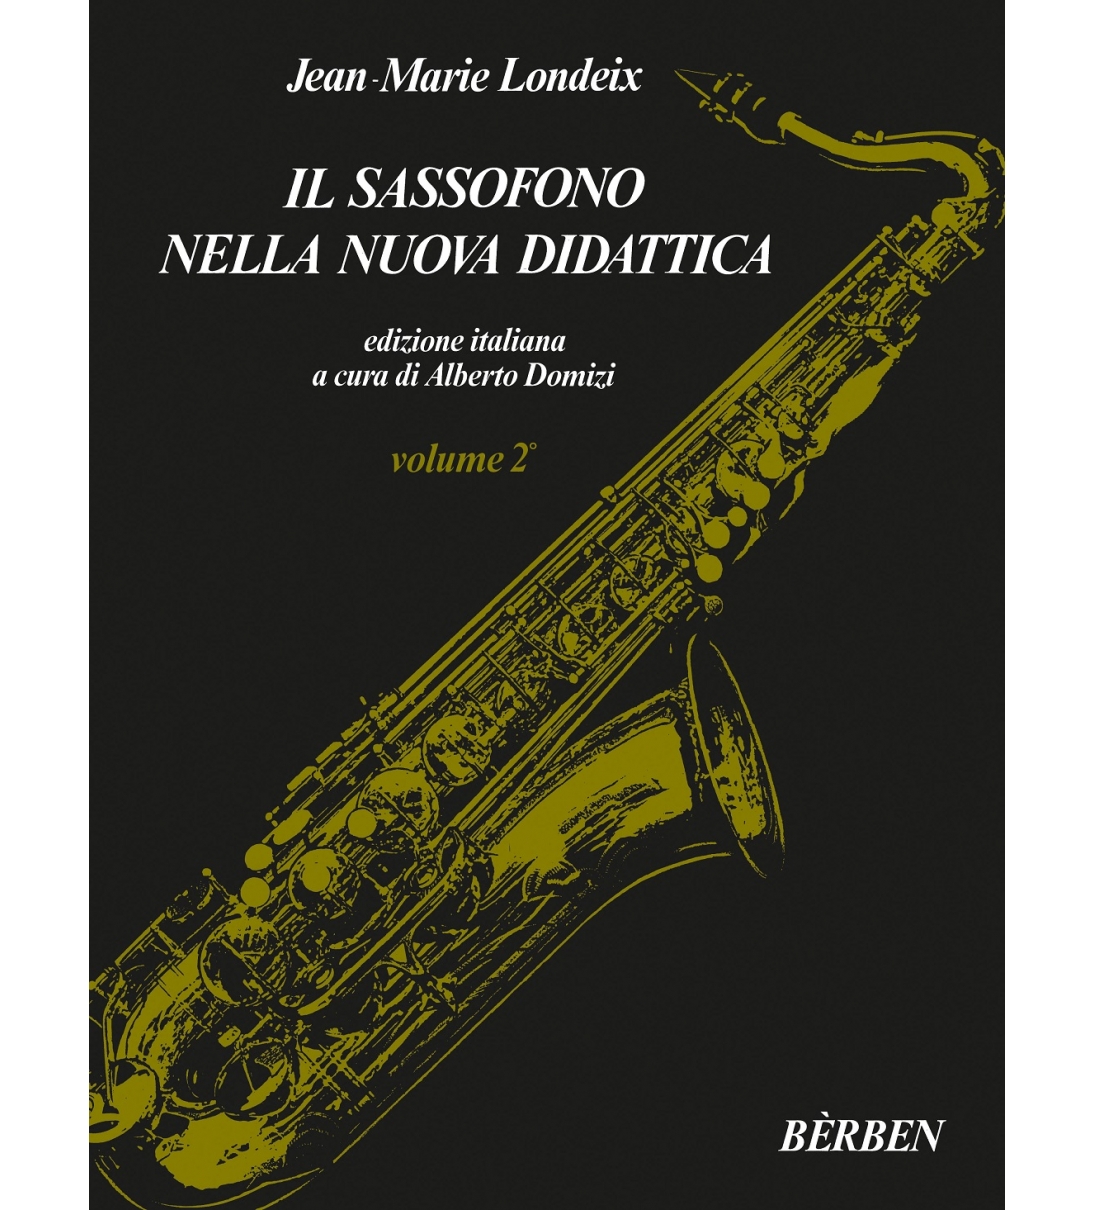 Il sassofono nella nuova didattica - Volume 2 